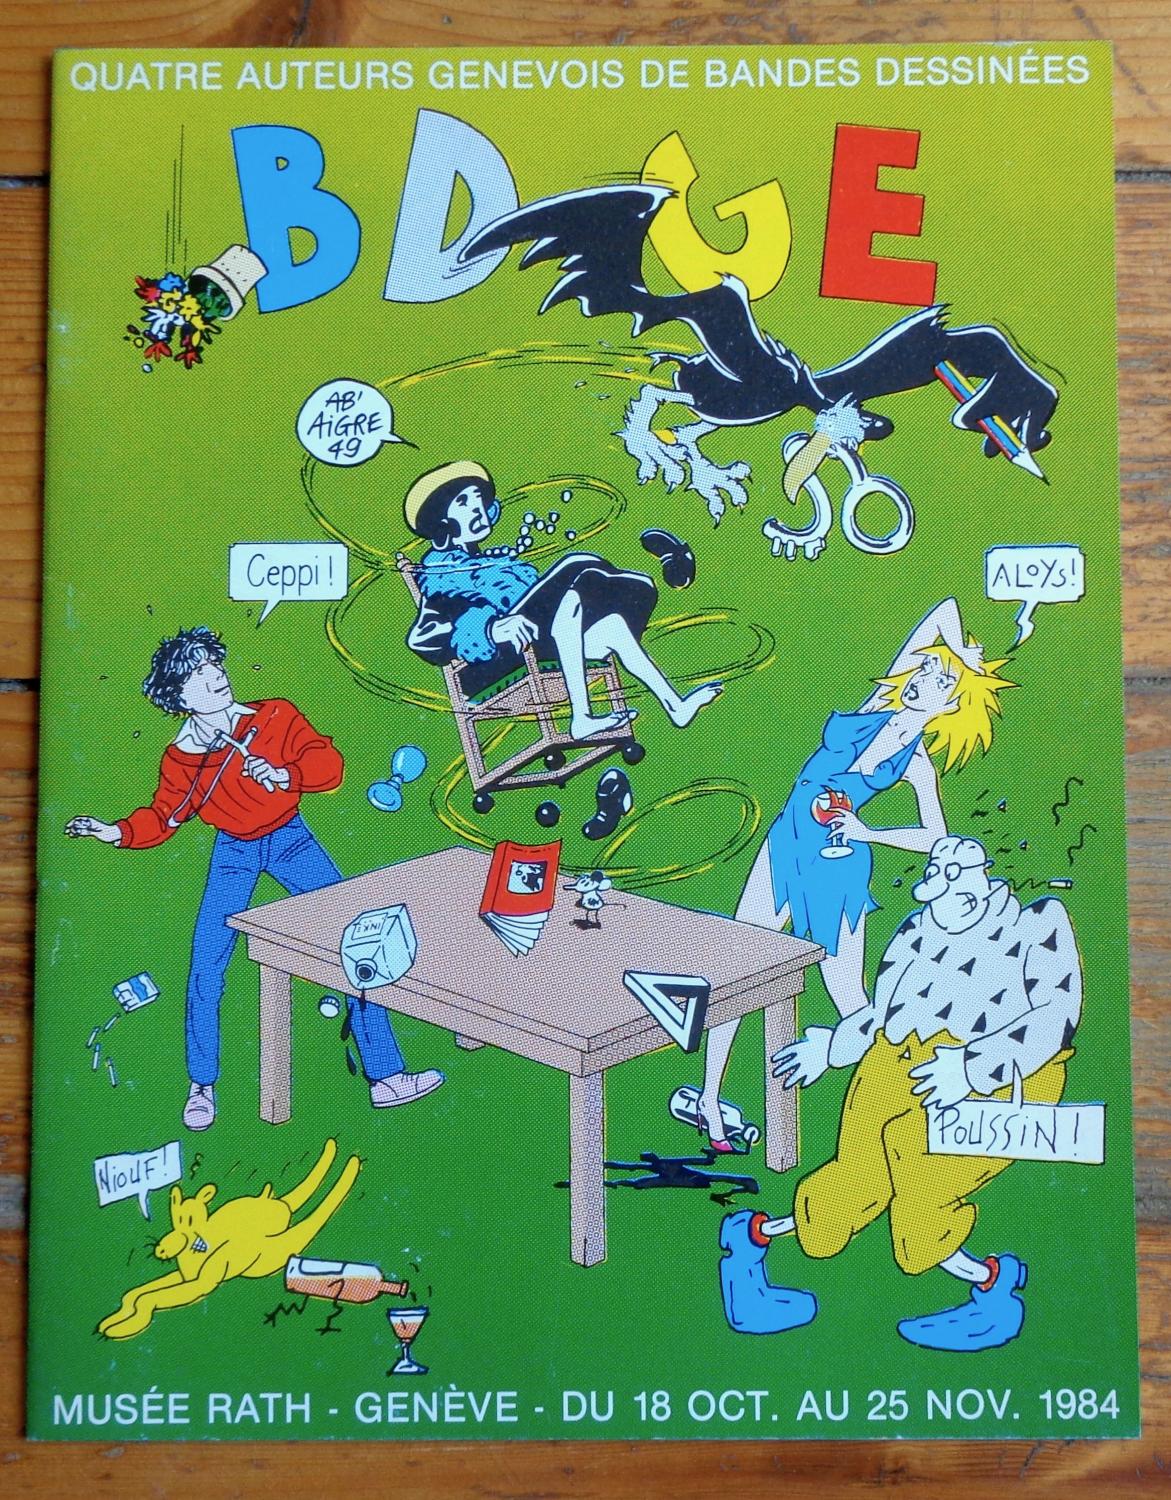 BD GE - Quatre auteurs genevois de bande dessinée. by Ab'Aigre, Aloys ...